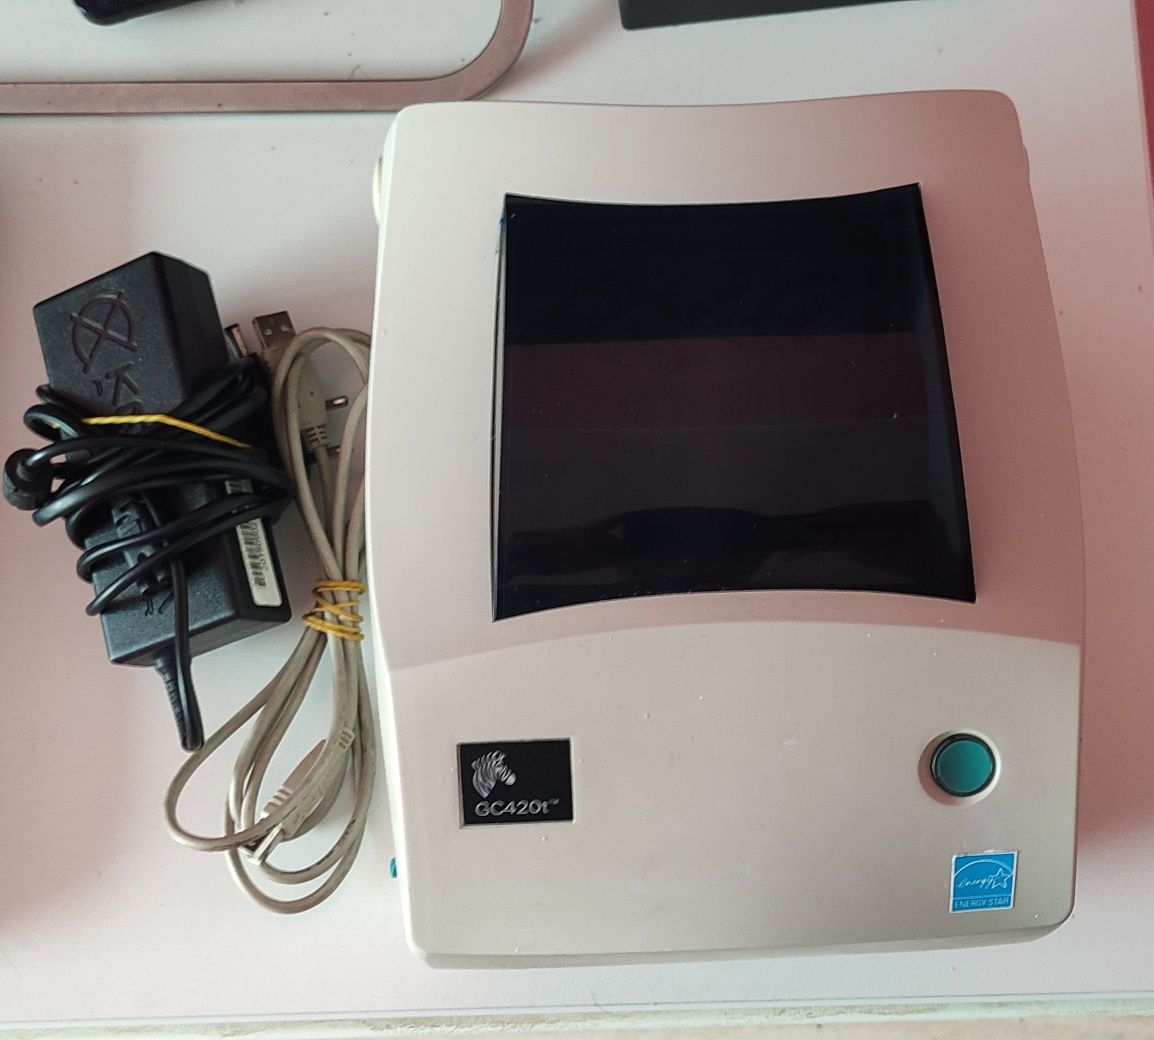 Термофлексный принтер ZEBRA GC420t